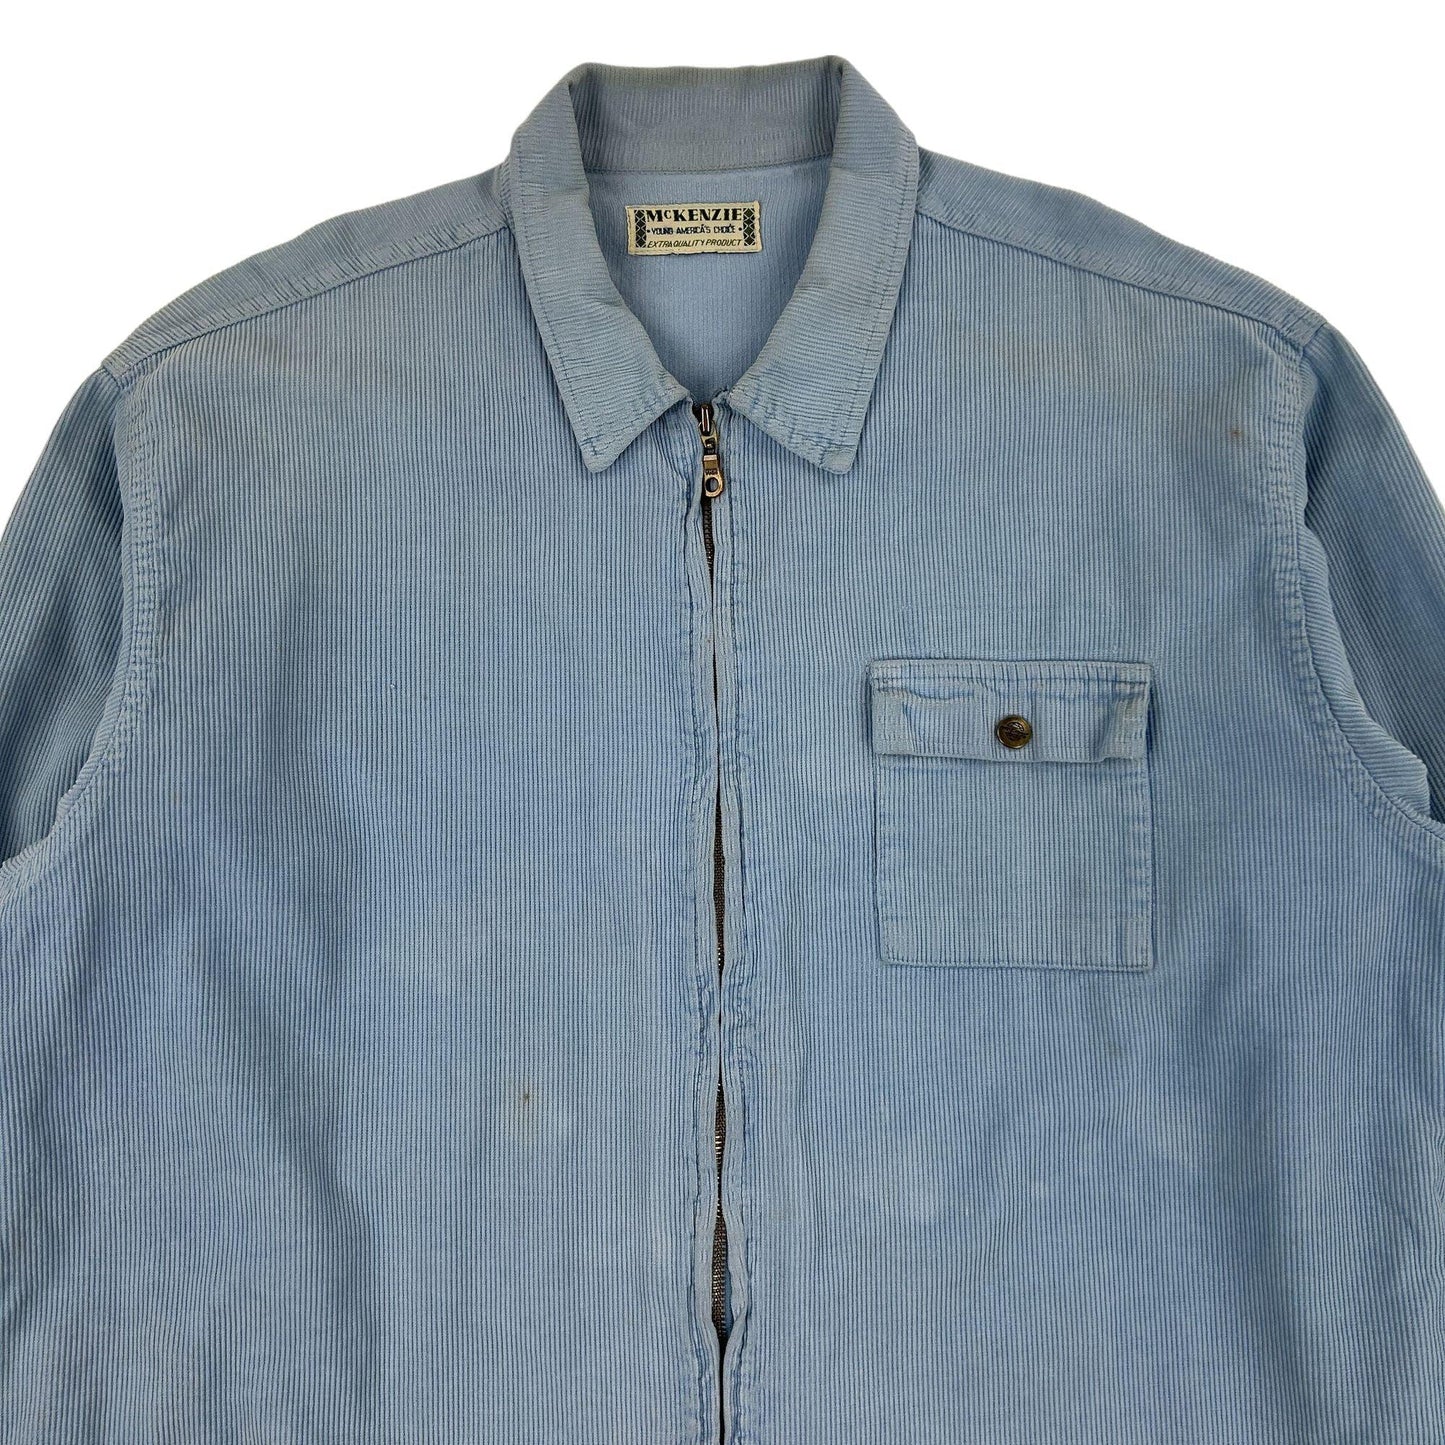 Vintage McKenzie Corduroy Shirt Jacket Size XL - Known Source